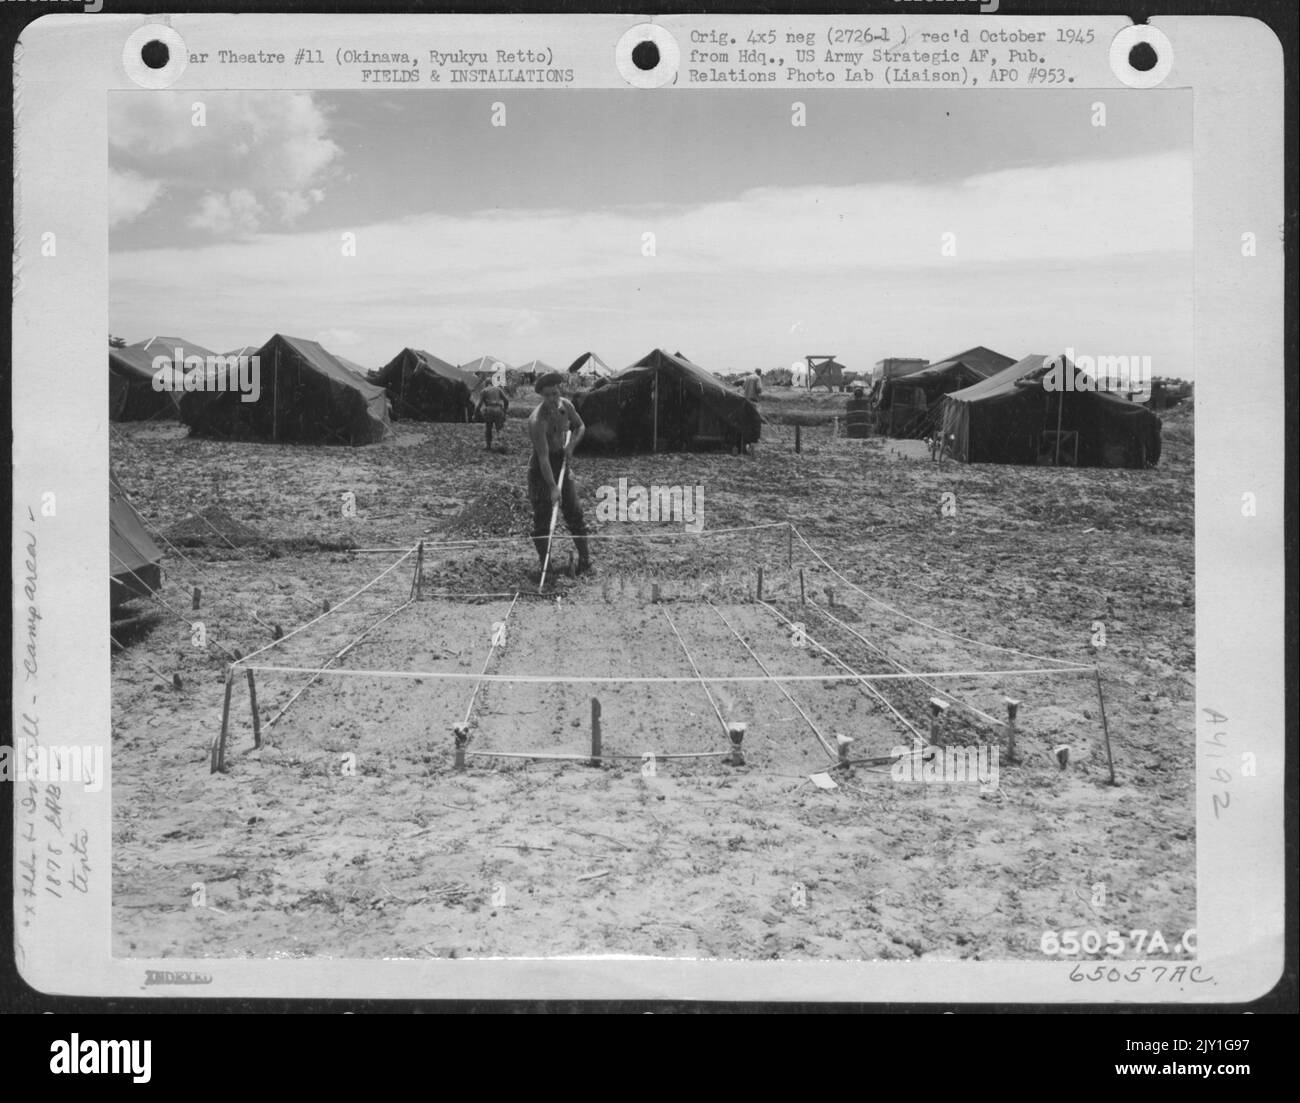 Ein 'Gi' bereitet Ein kleines Gartengrundstück in der Nähe seines Zeltes im Lagerbereich des Flugbataillons der Ingenieure von 1878Th auf Okinawa, Ryukyu Retto, vor. Mai 1945. Stockfoto